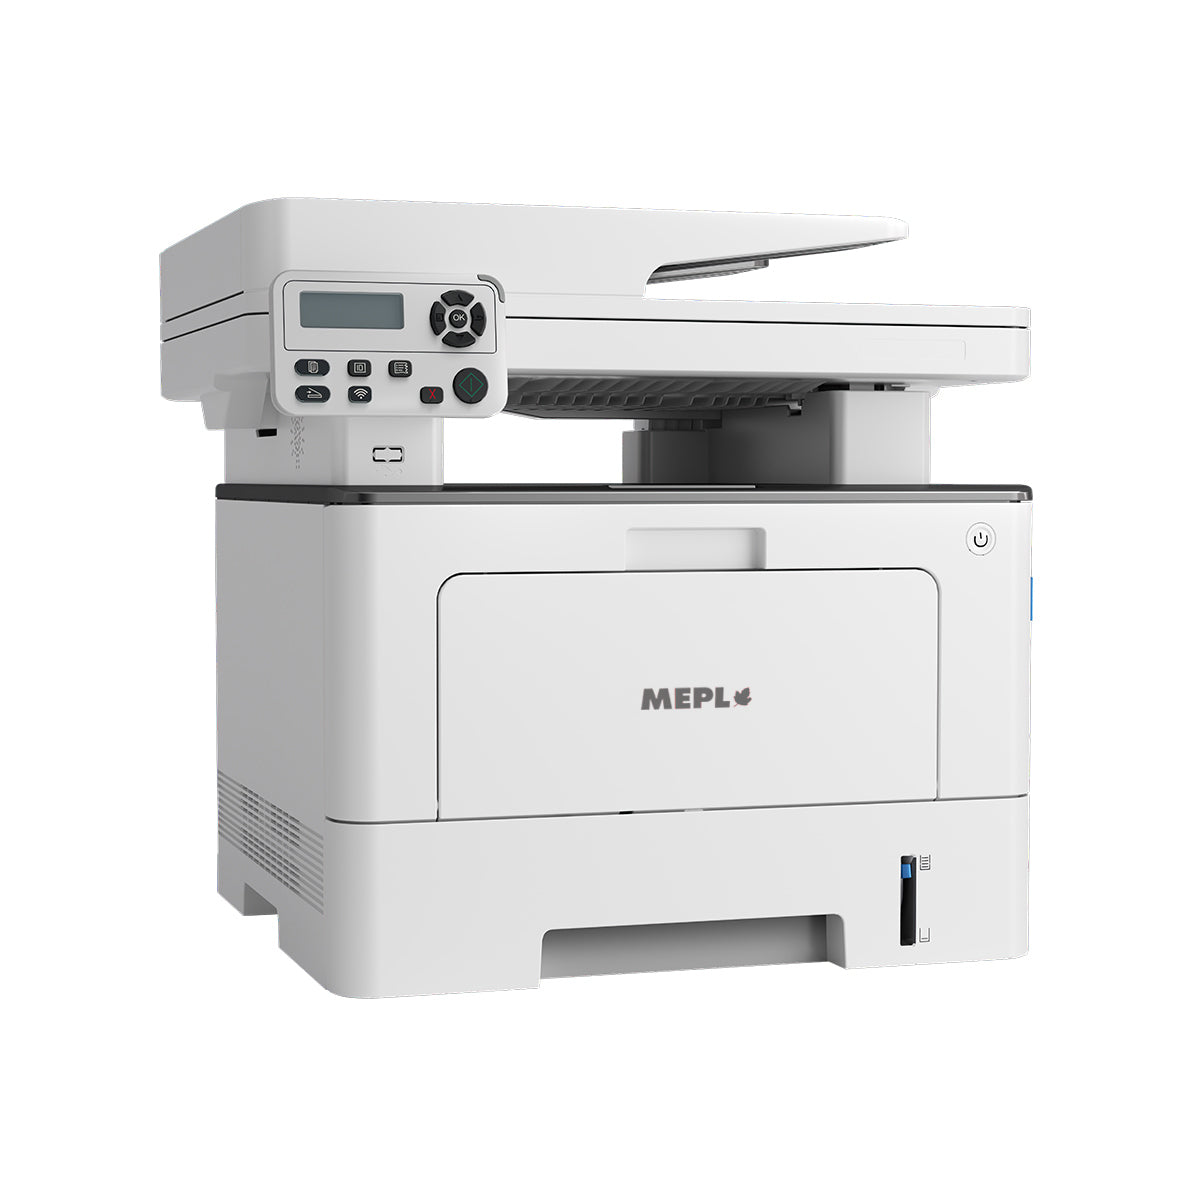 MM7103DW Mono Laser Multifunction Printer